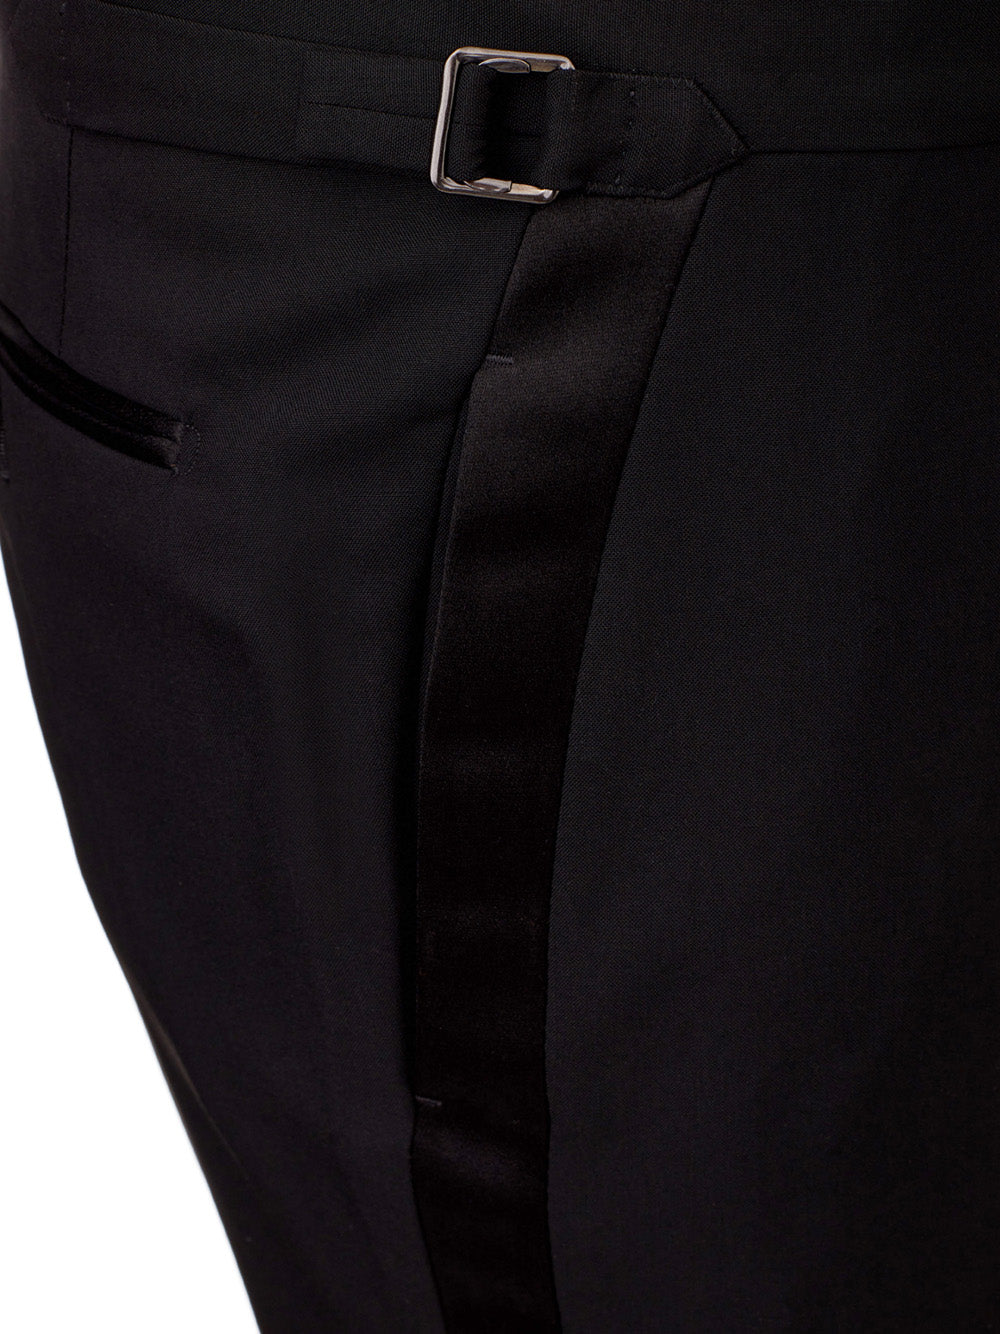 Tom Ford Black Tuxedo Trousers